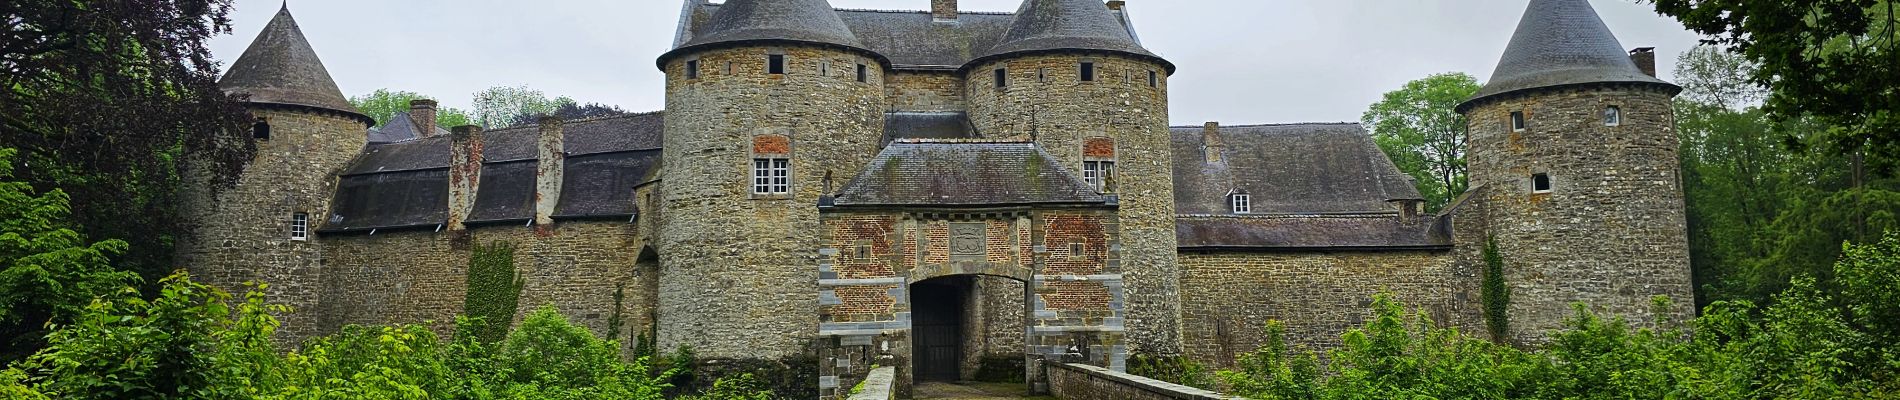 POI Gembloers - Château de Corroy - Photo